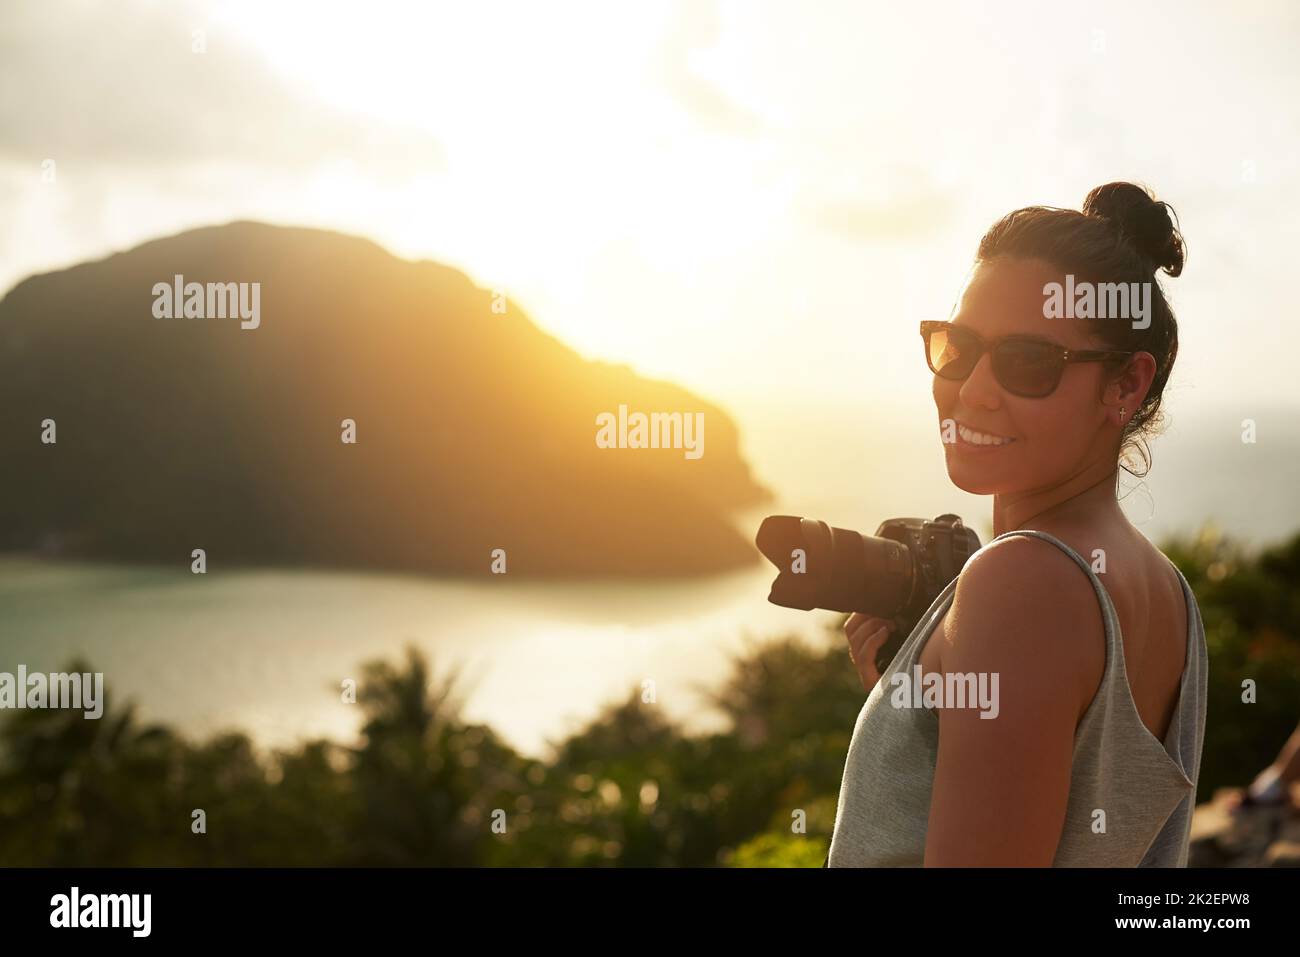 Dies ist eine bildschöne Landschaft. Porträt einer glücklichen jungen Frau, die im Urlaub einen tropischen Ausblick fotografiert. Stockfoto